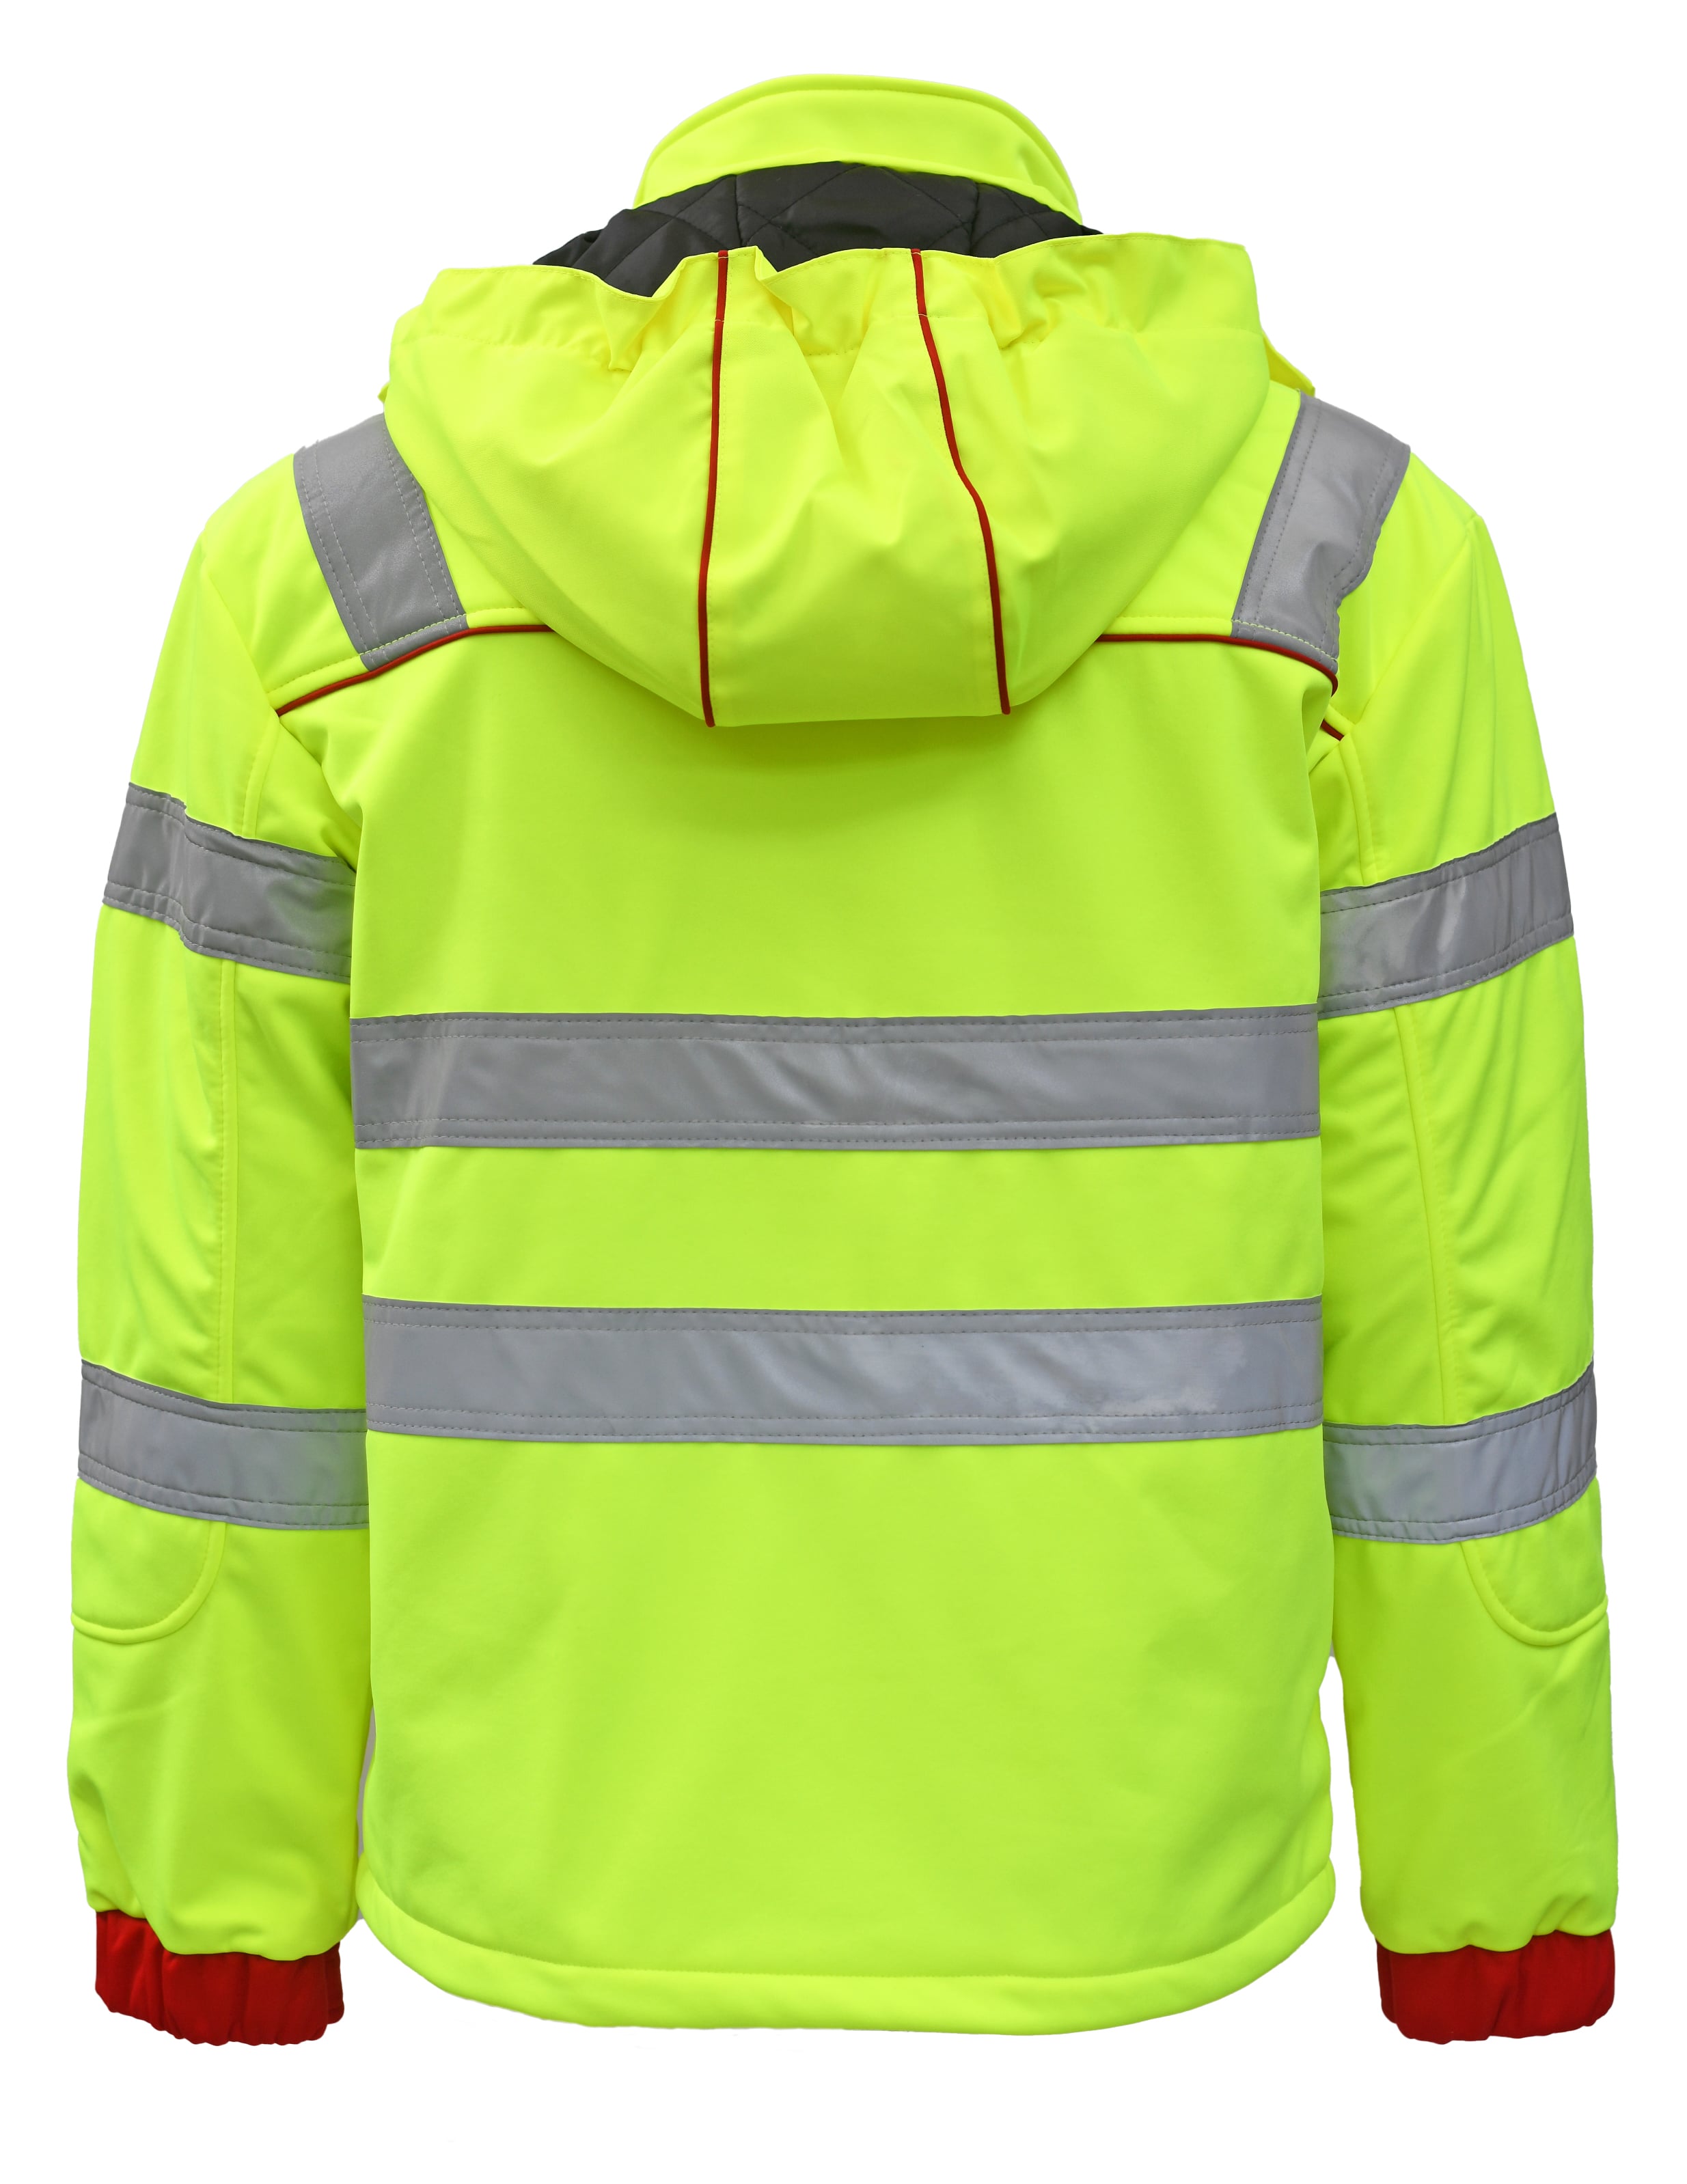 Rescuewear Softshelljacke Dynamic HiVis Klasse 3 Rot / Neon Gelb - L